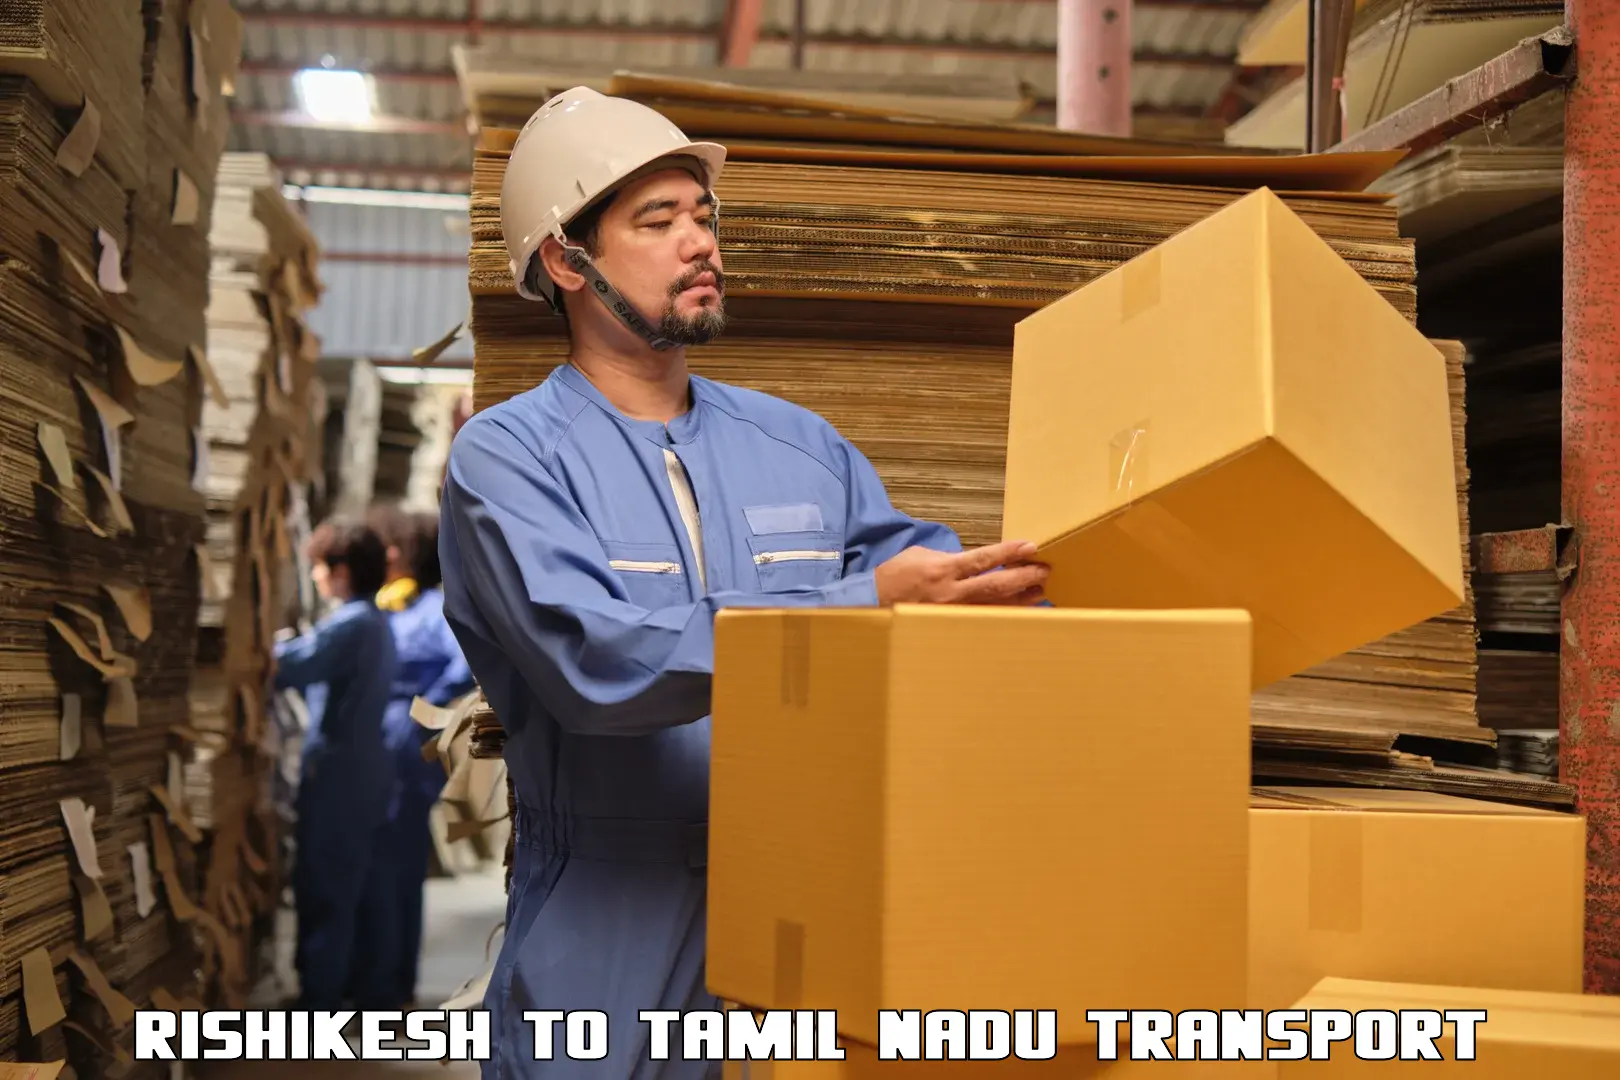 Truck transport companies in India Rishikesh to Chennai